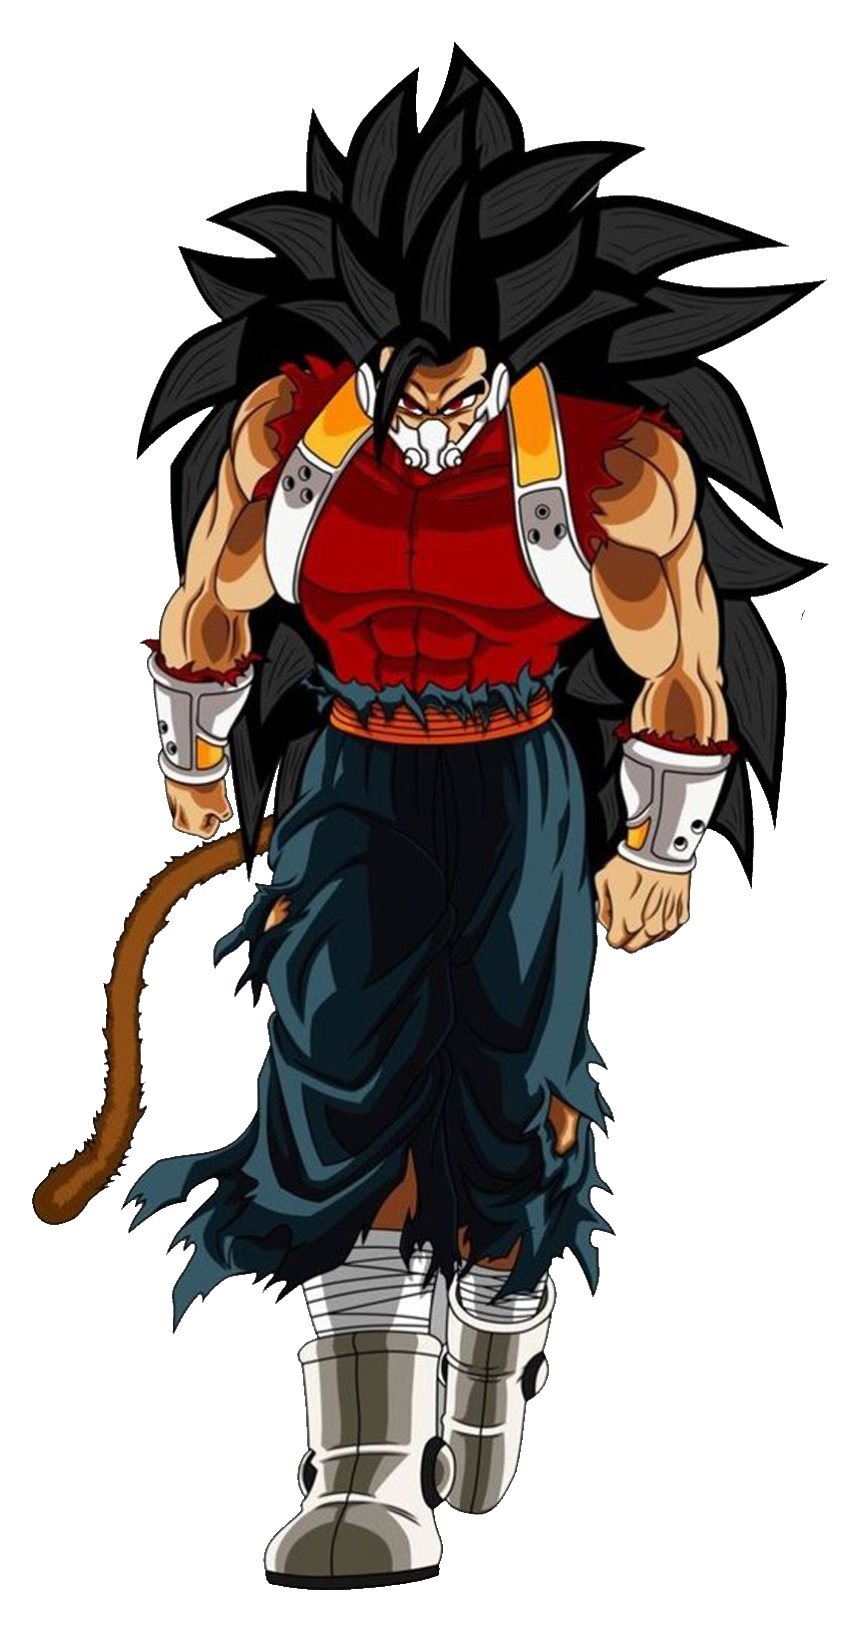 Kategorie:Saiyajin, Gokupedia